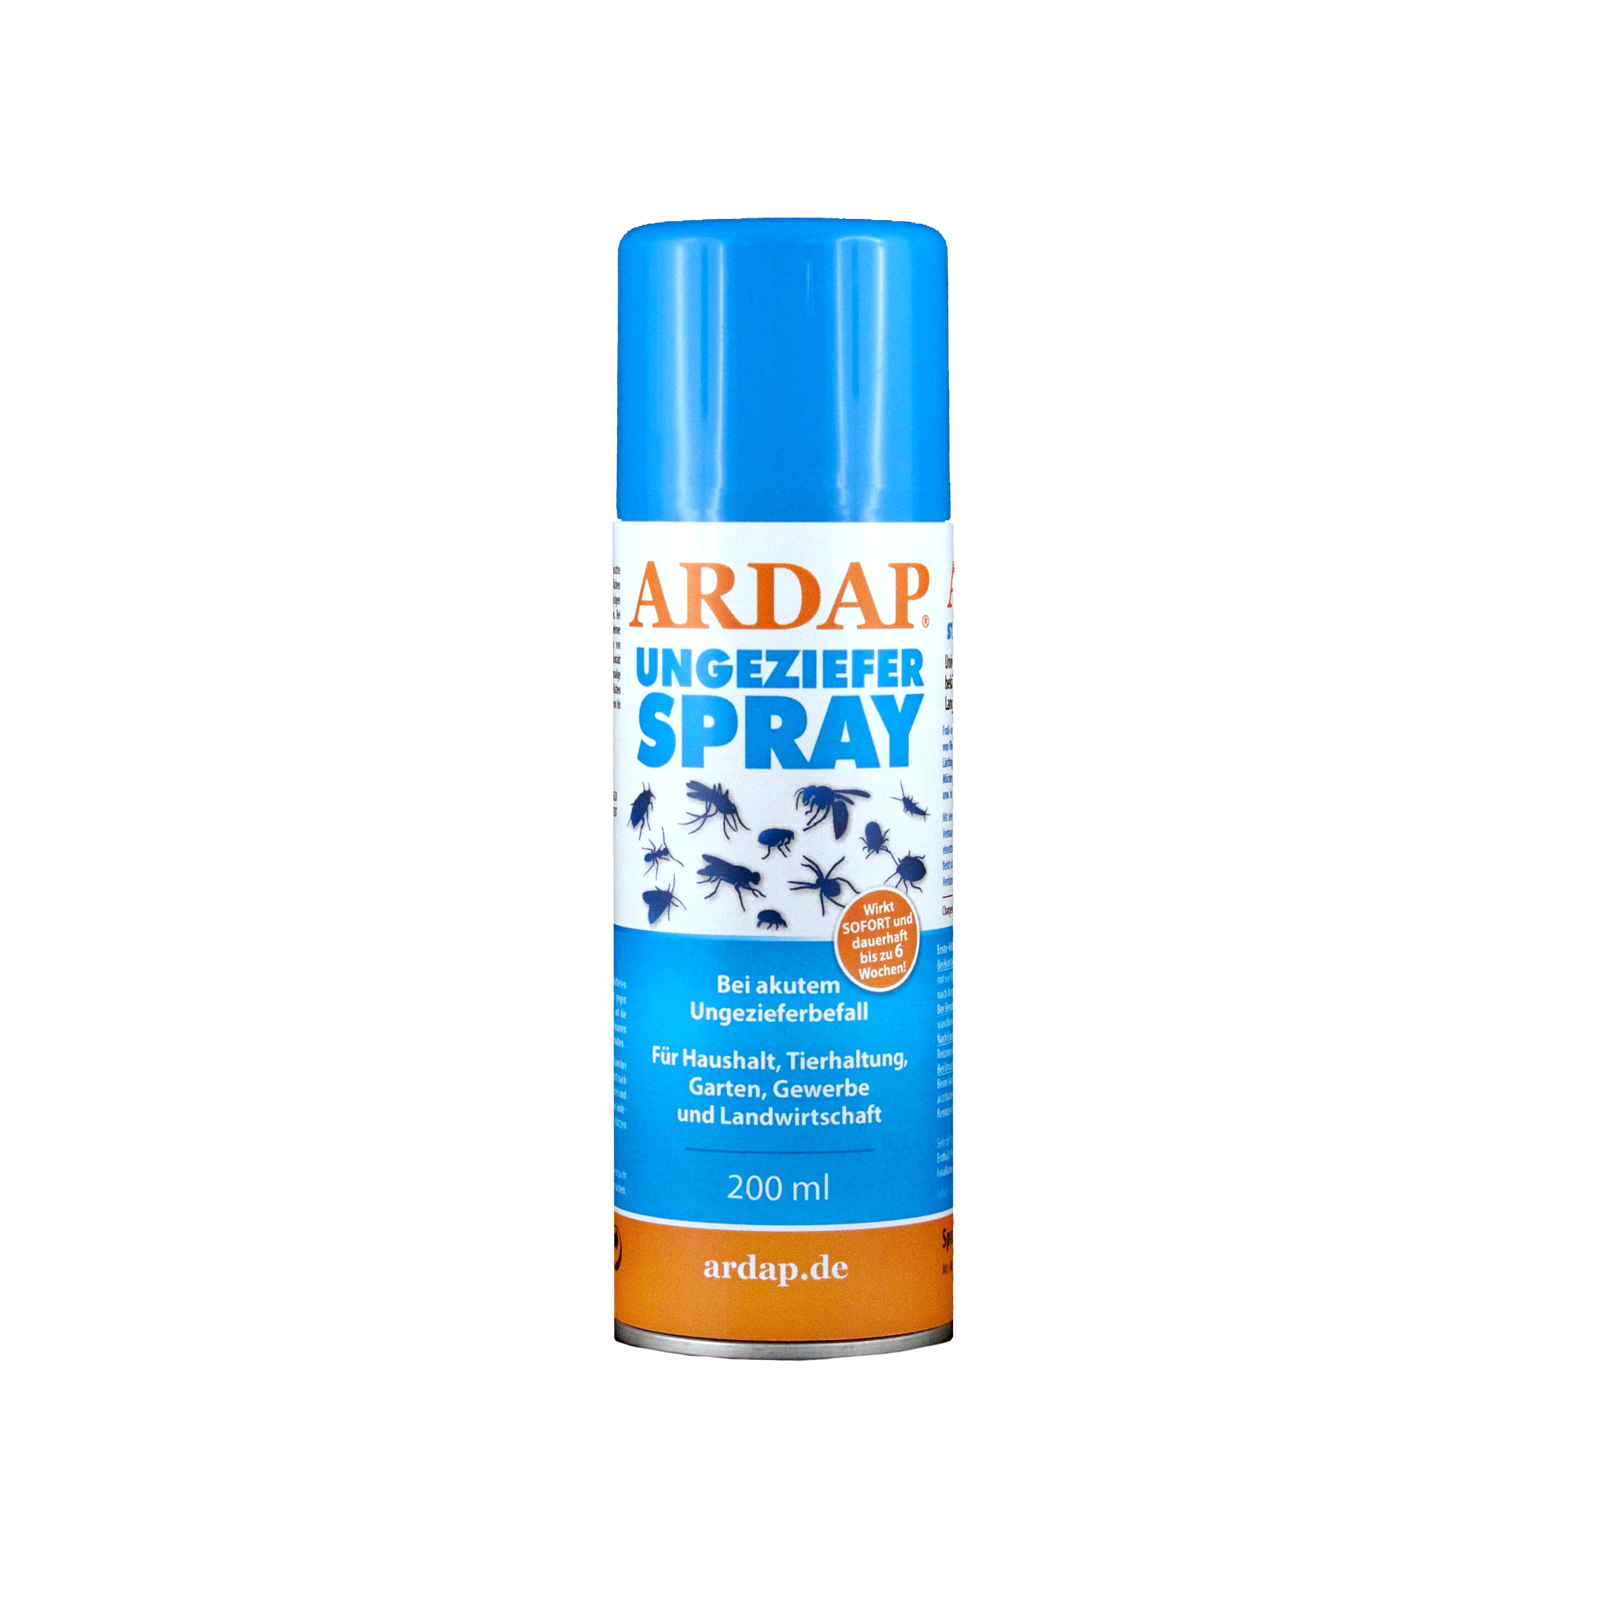 Ardap Spray 200ml  Futtermittel Online Shop Mühle Gladen